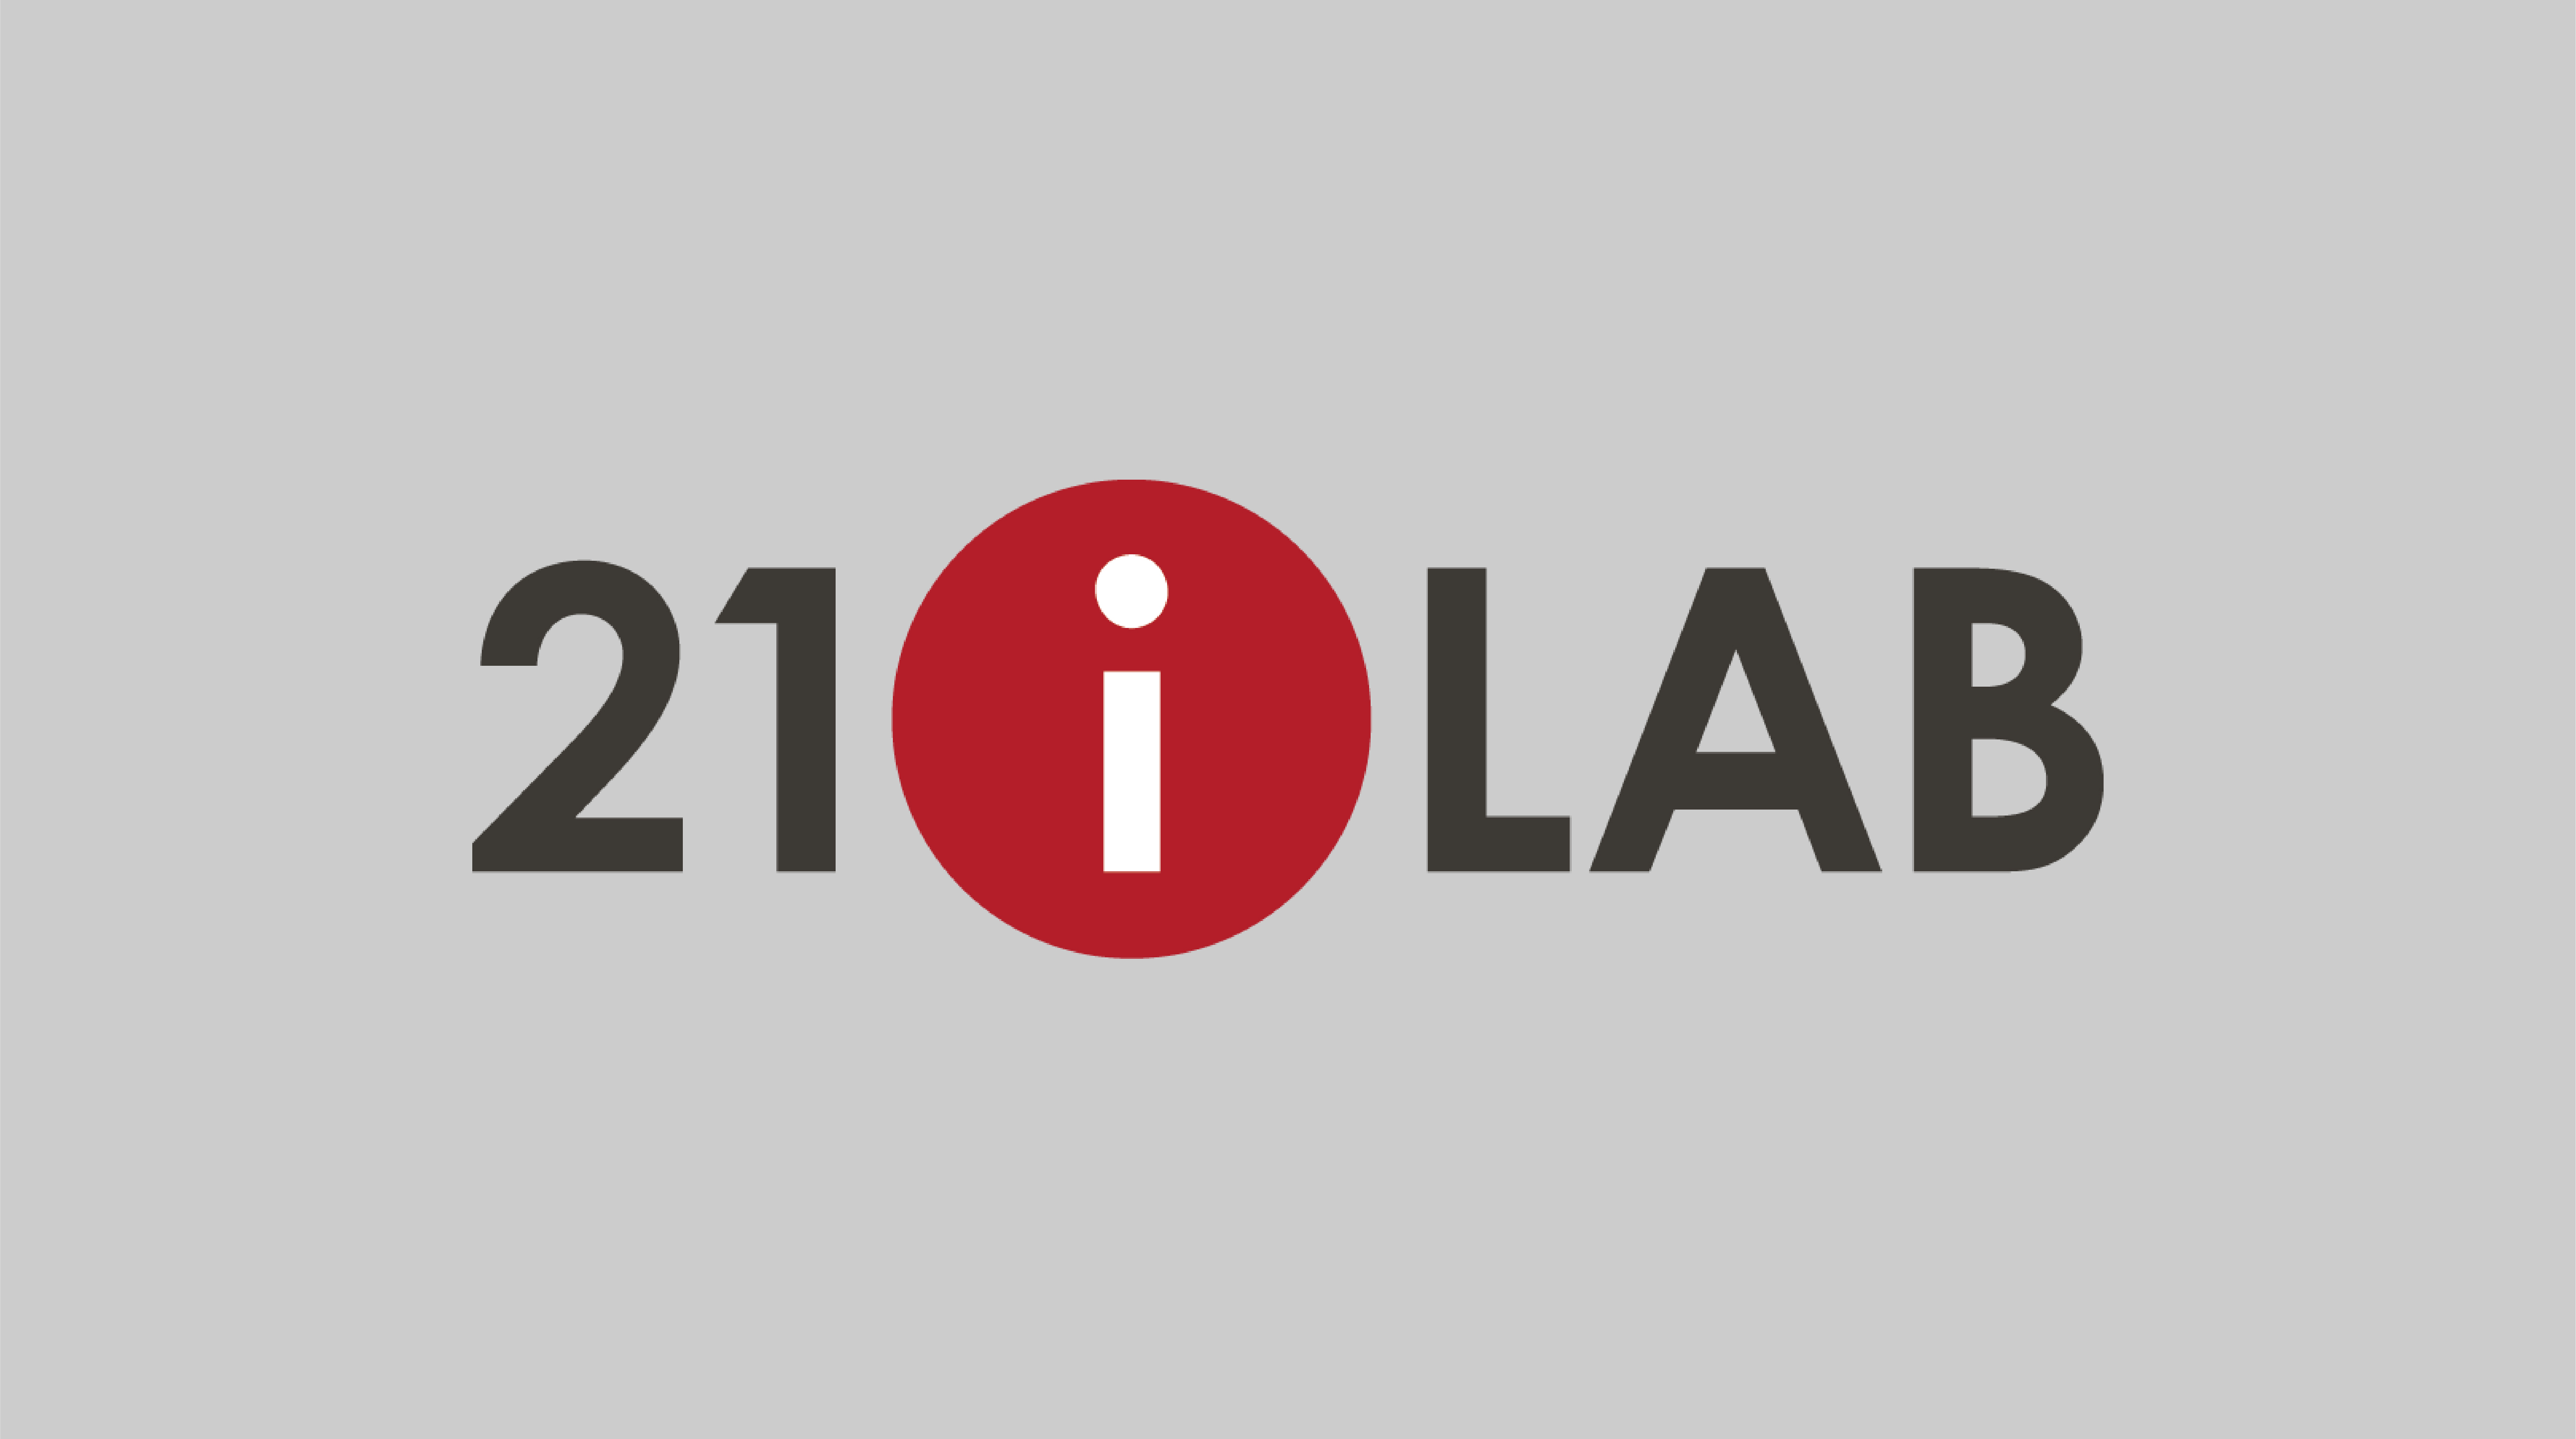 21iLAB estende le proprie competenze grazie all’acquisizione di Senspin the Sensory Design company